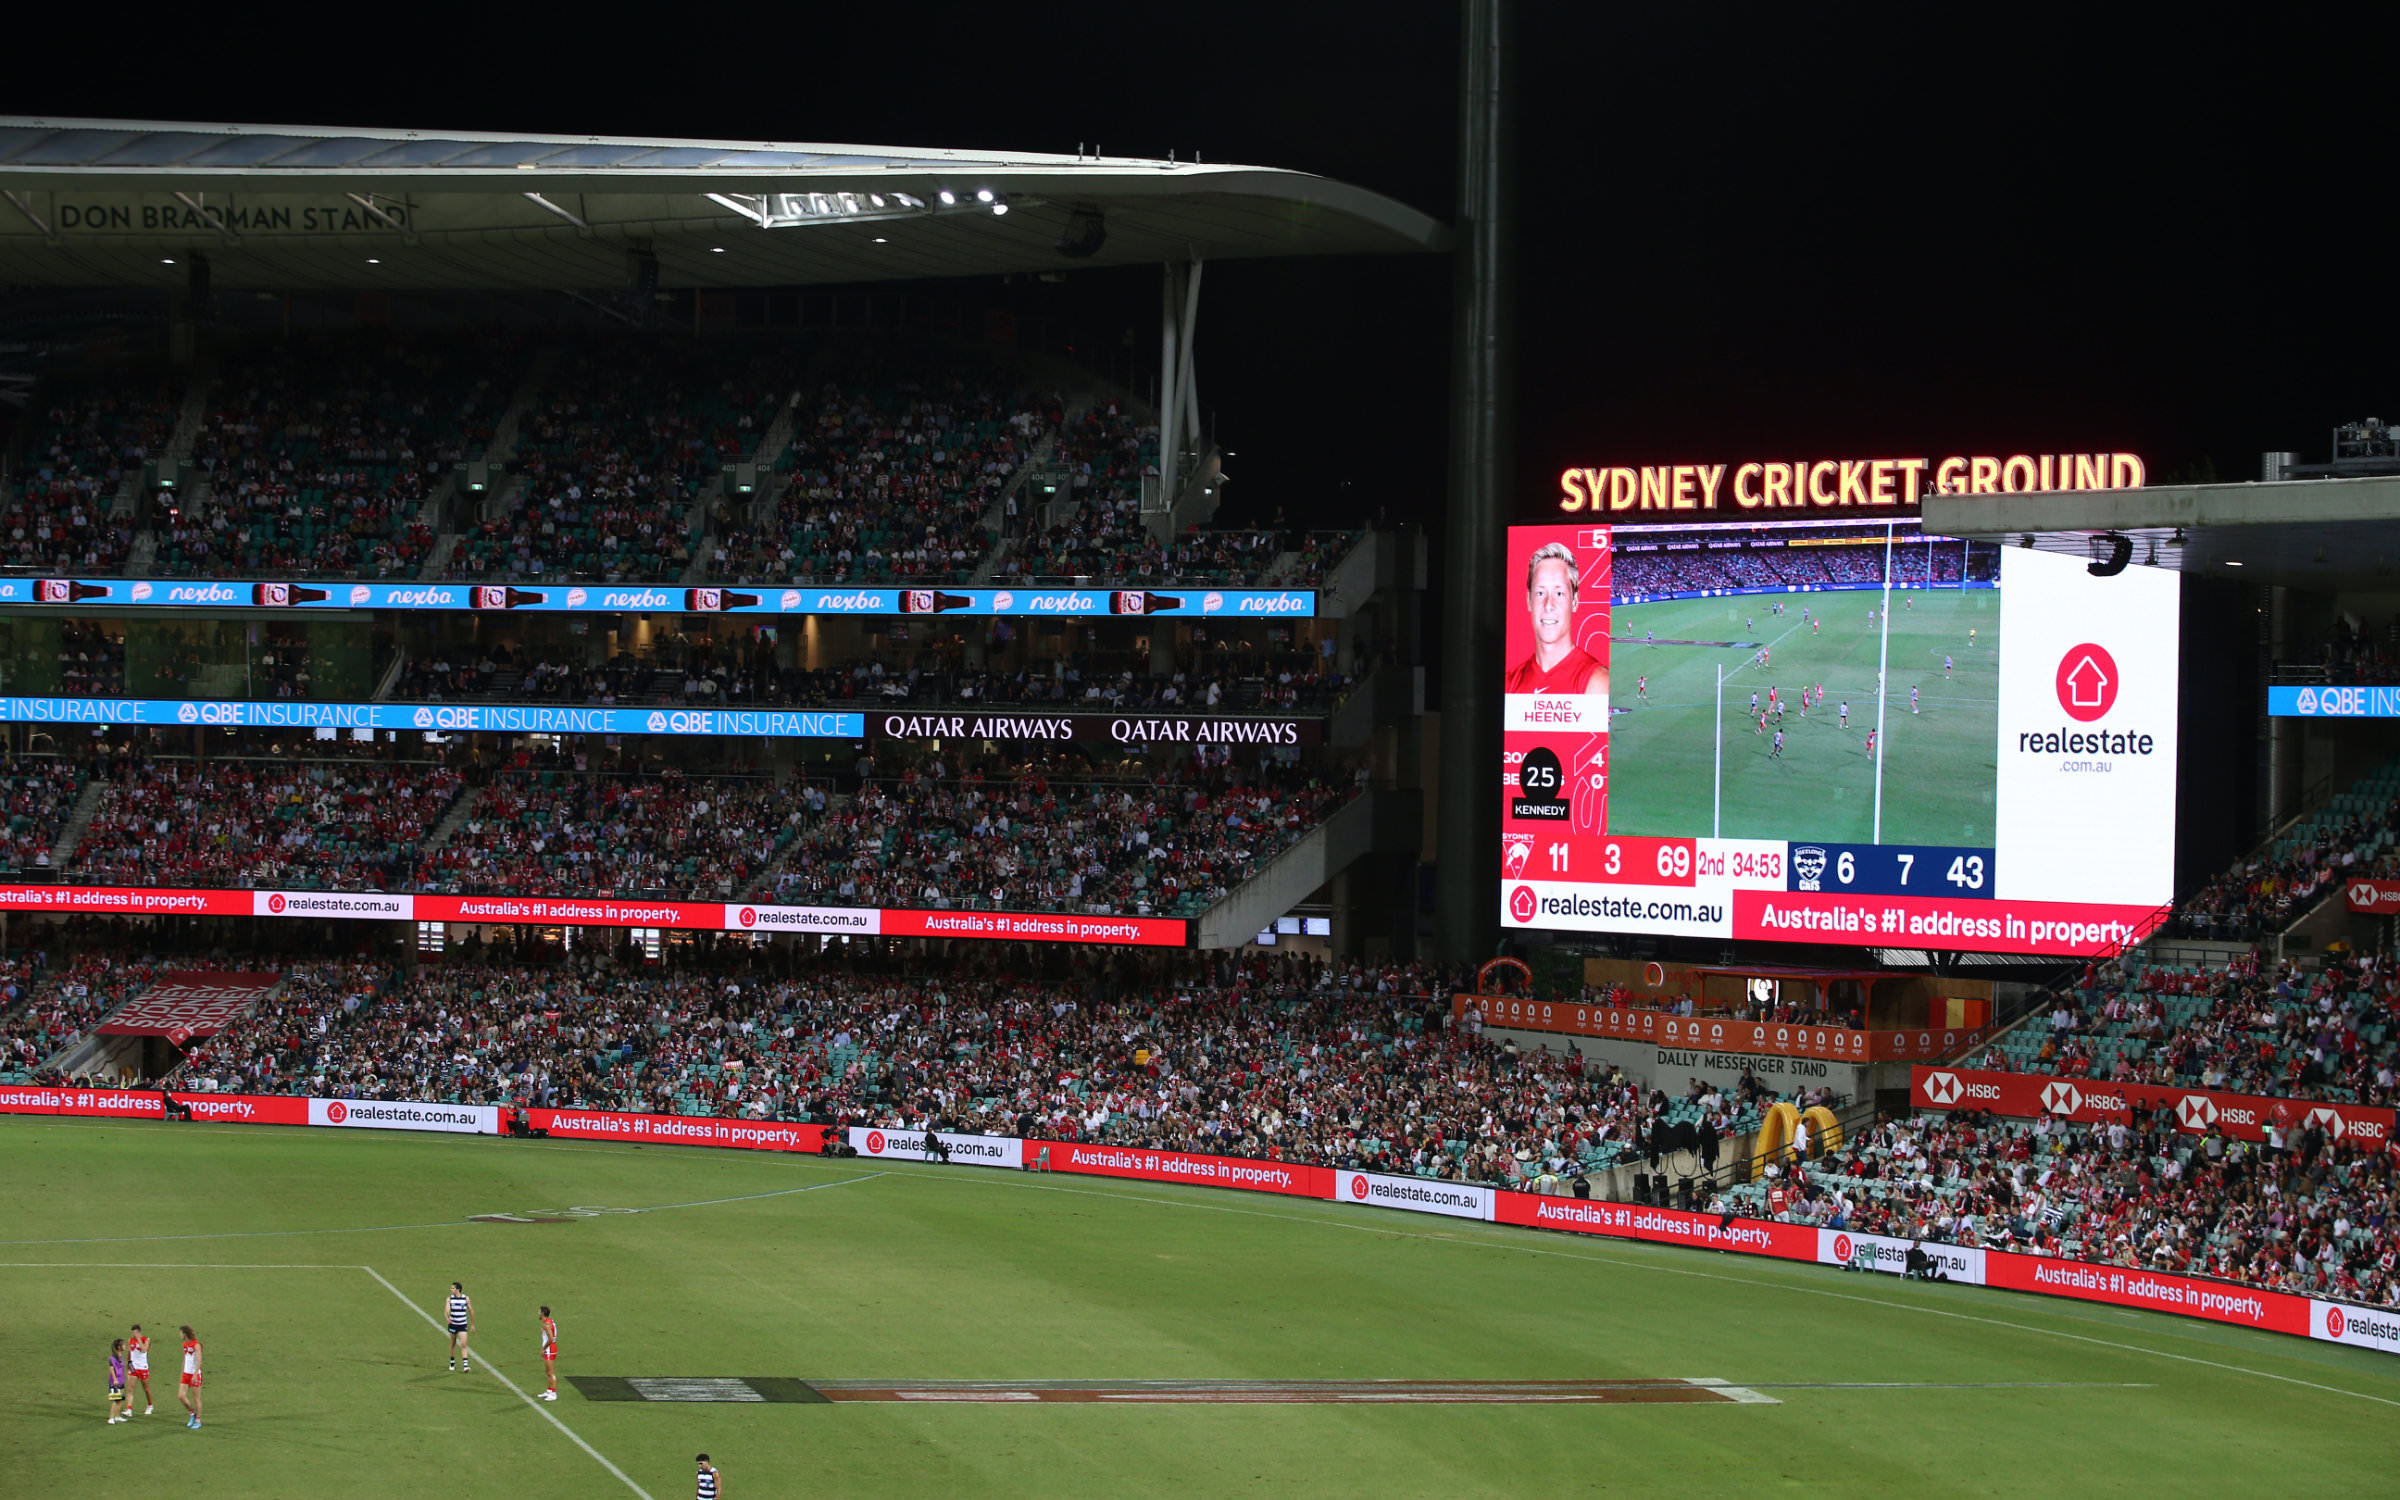 Australiens größte Immobilienplattform realestate.com.au wirbt mit der Pangea im Sydney Cricket Ground (Australian Football: Sydney Swans gegen Geelong Cats)